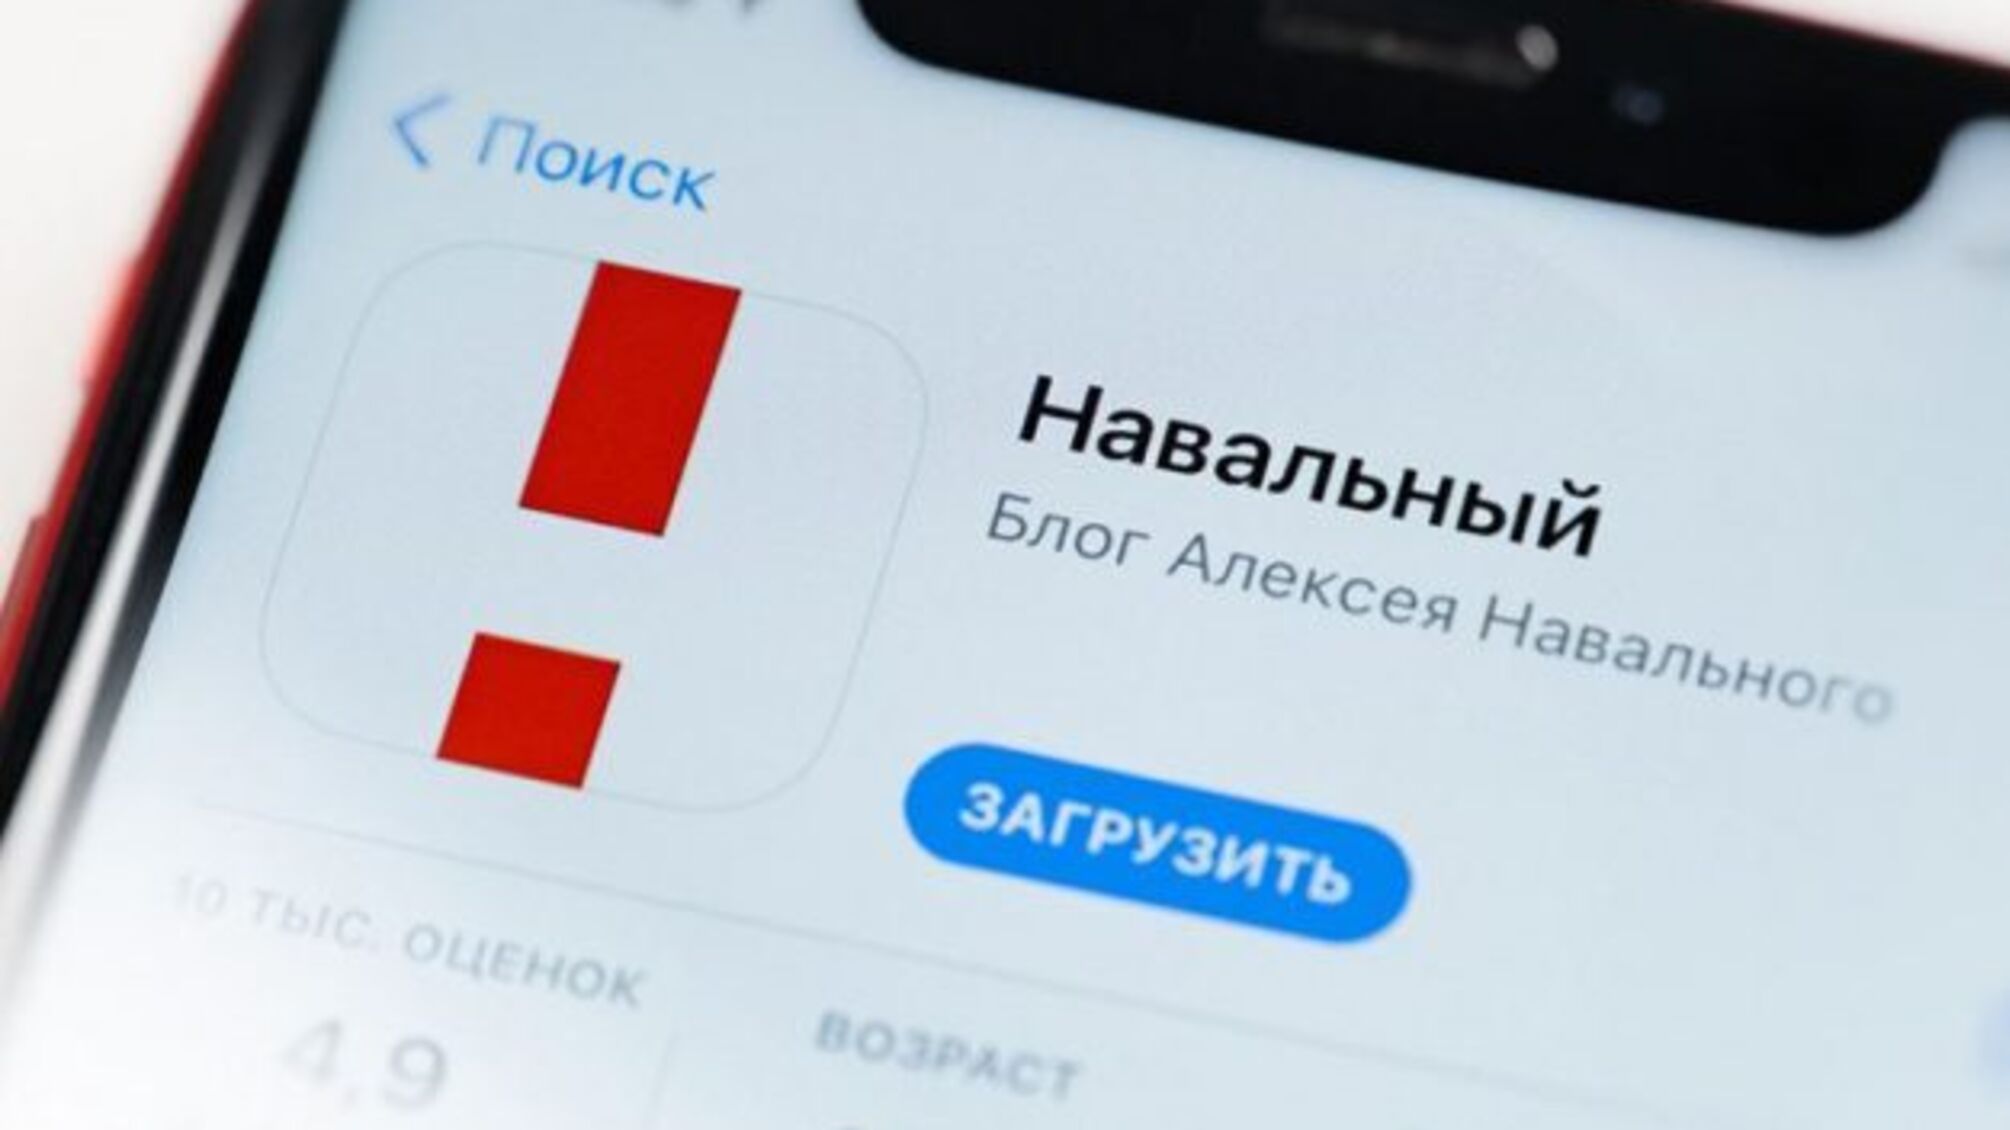 ЄС назвав «політикою залякування» тиск на інтернет-платформи під час виборів у РФ